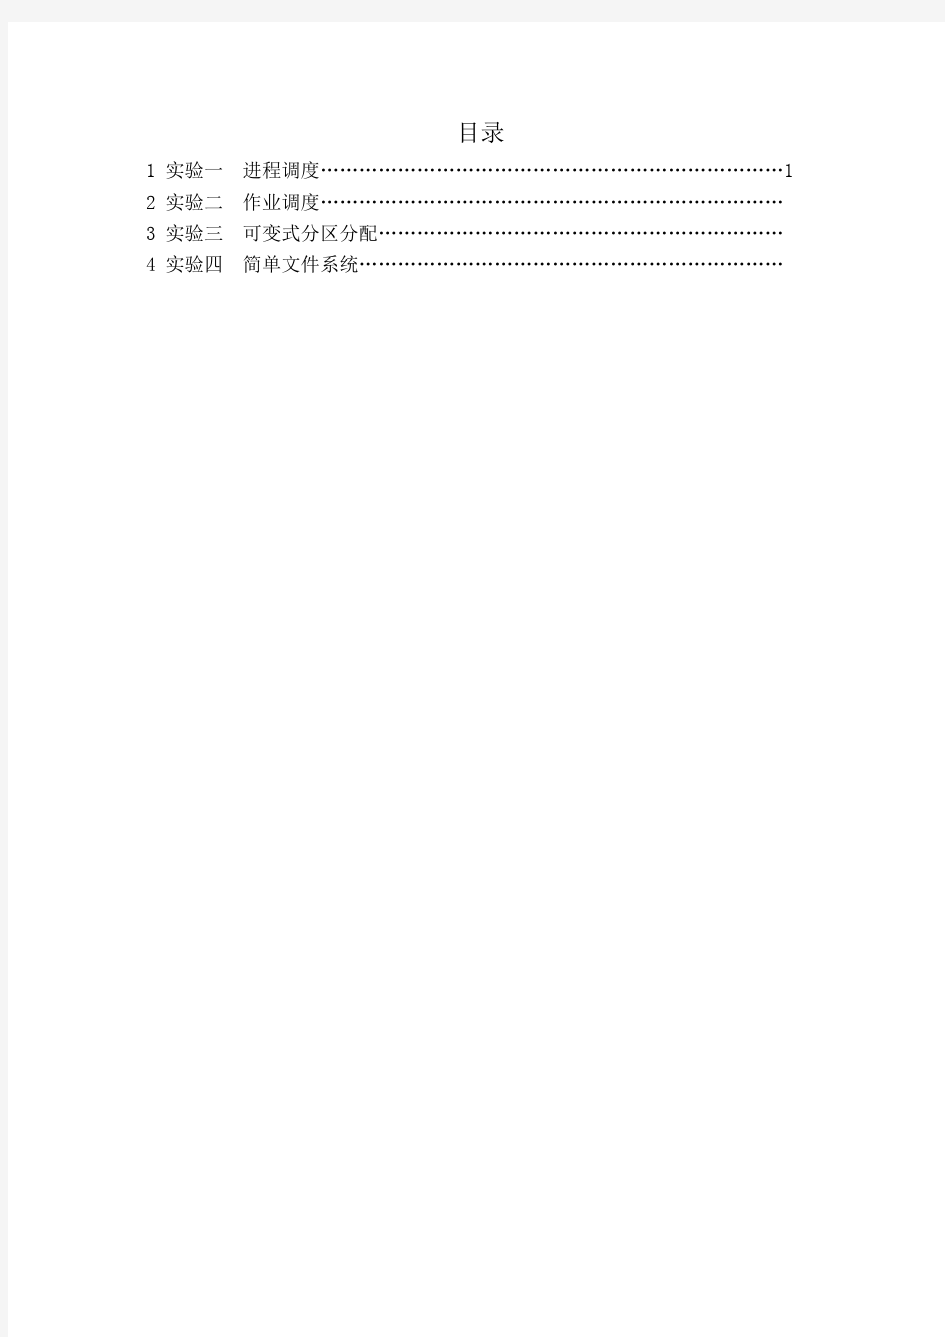 广东工业大学操作系统-实验报告-4份全